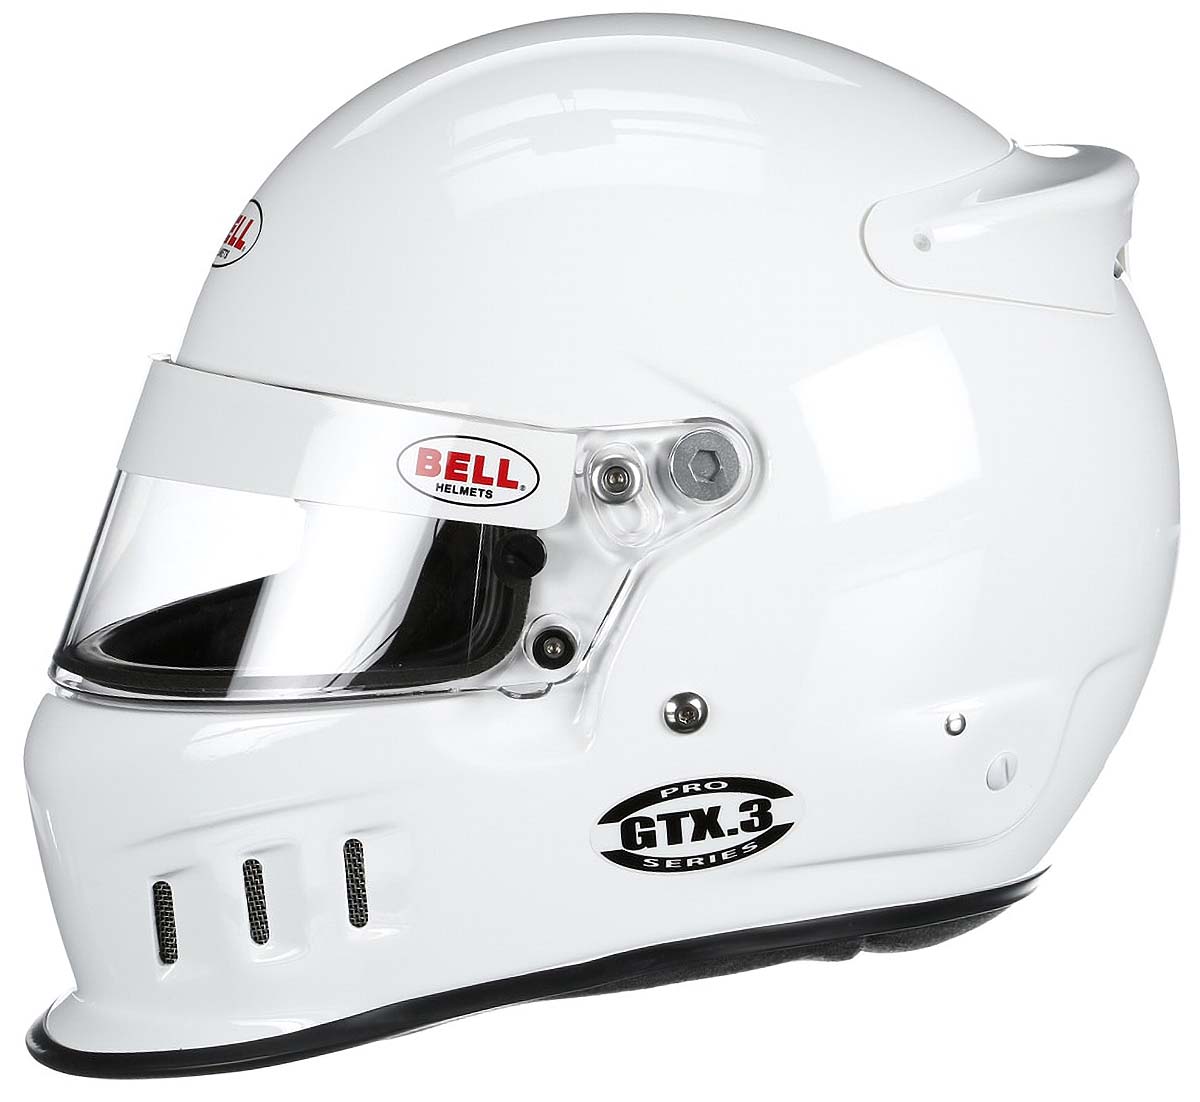 Detailed Bell White GTX.3 Helmet SA2020 side Image